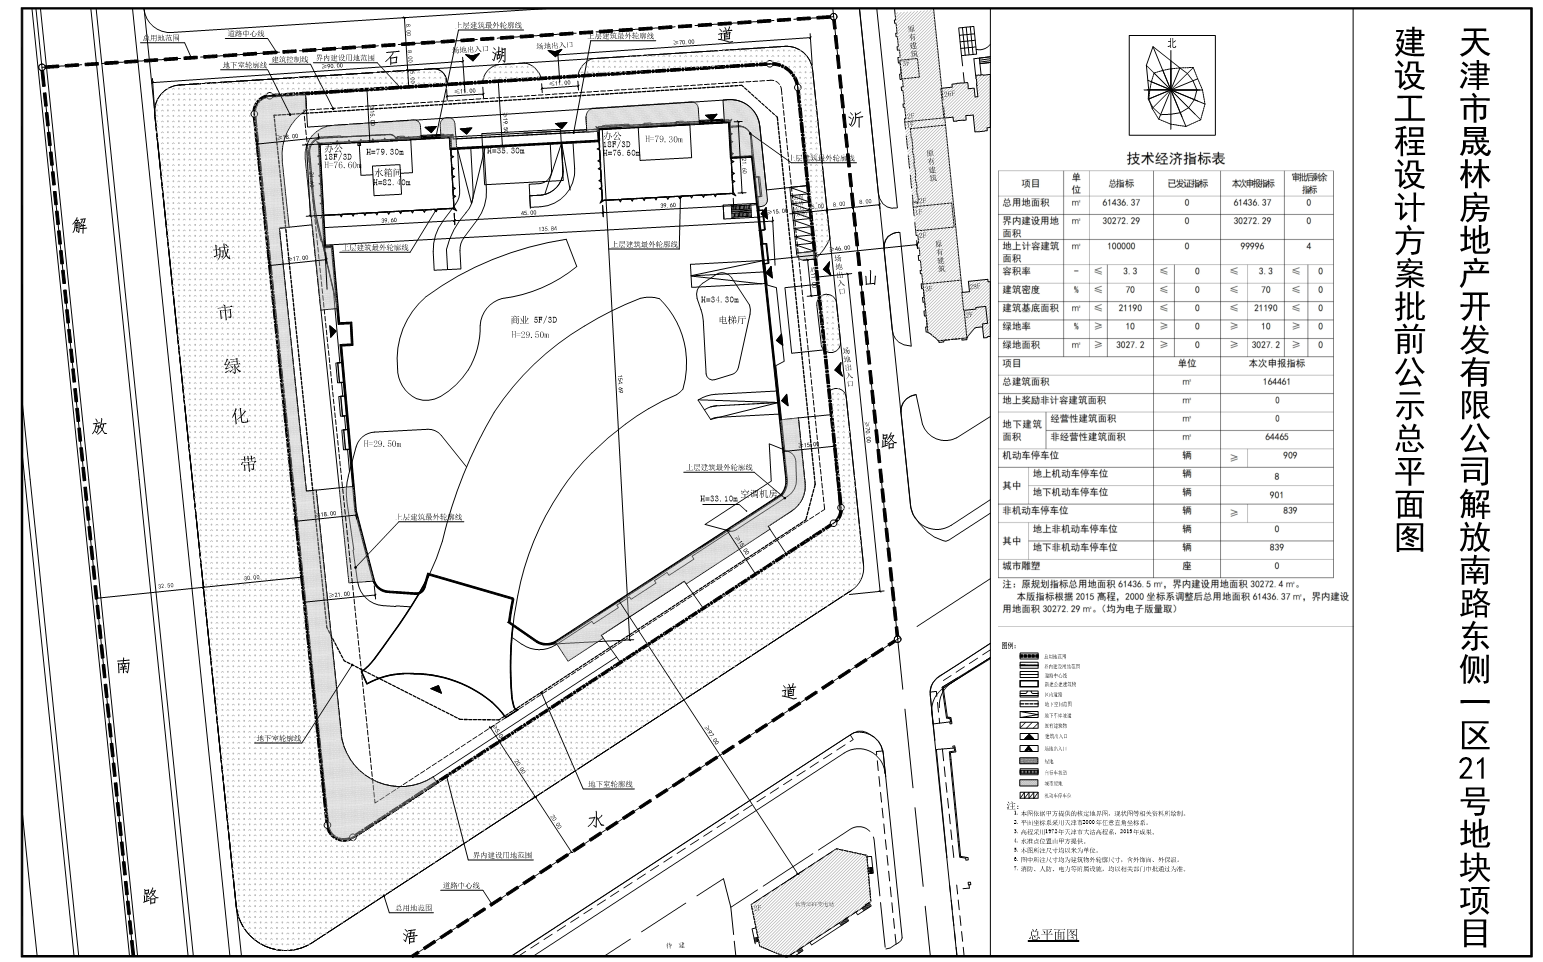 天津市晟林房地产开发有限公司解放南路东侧一区21号地项目建设工程设计方案批前公示总平面图